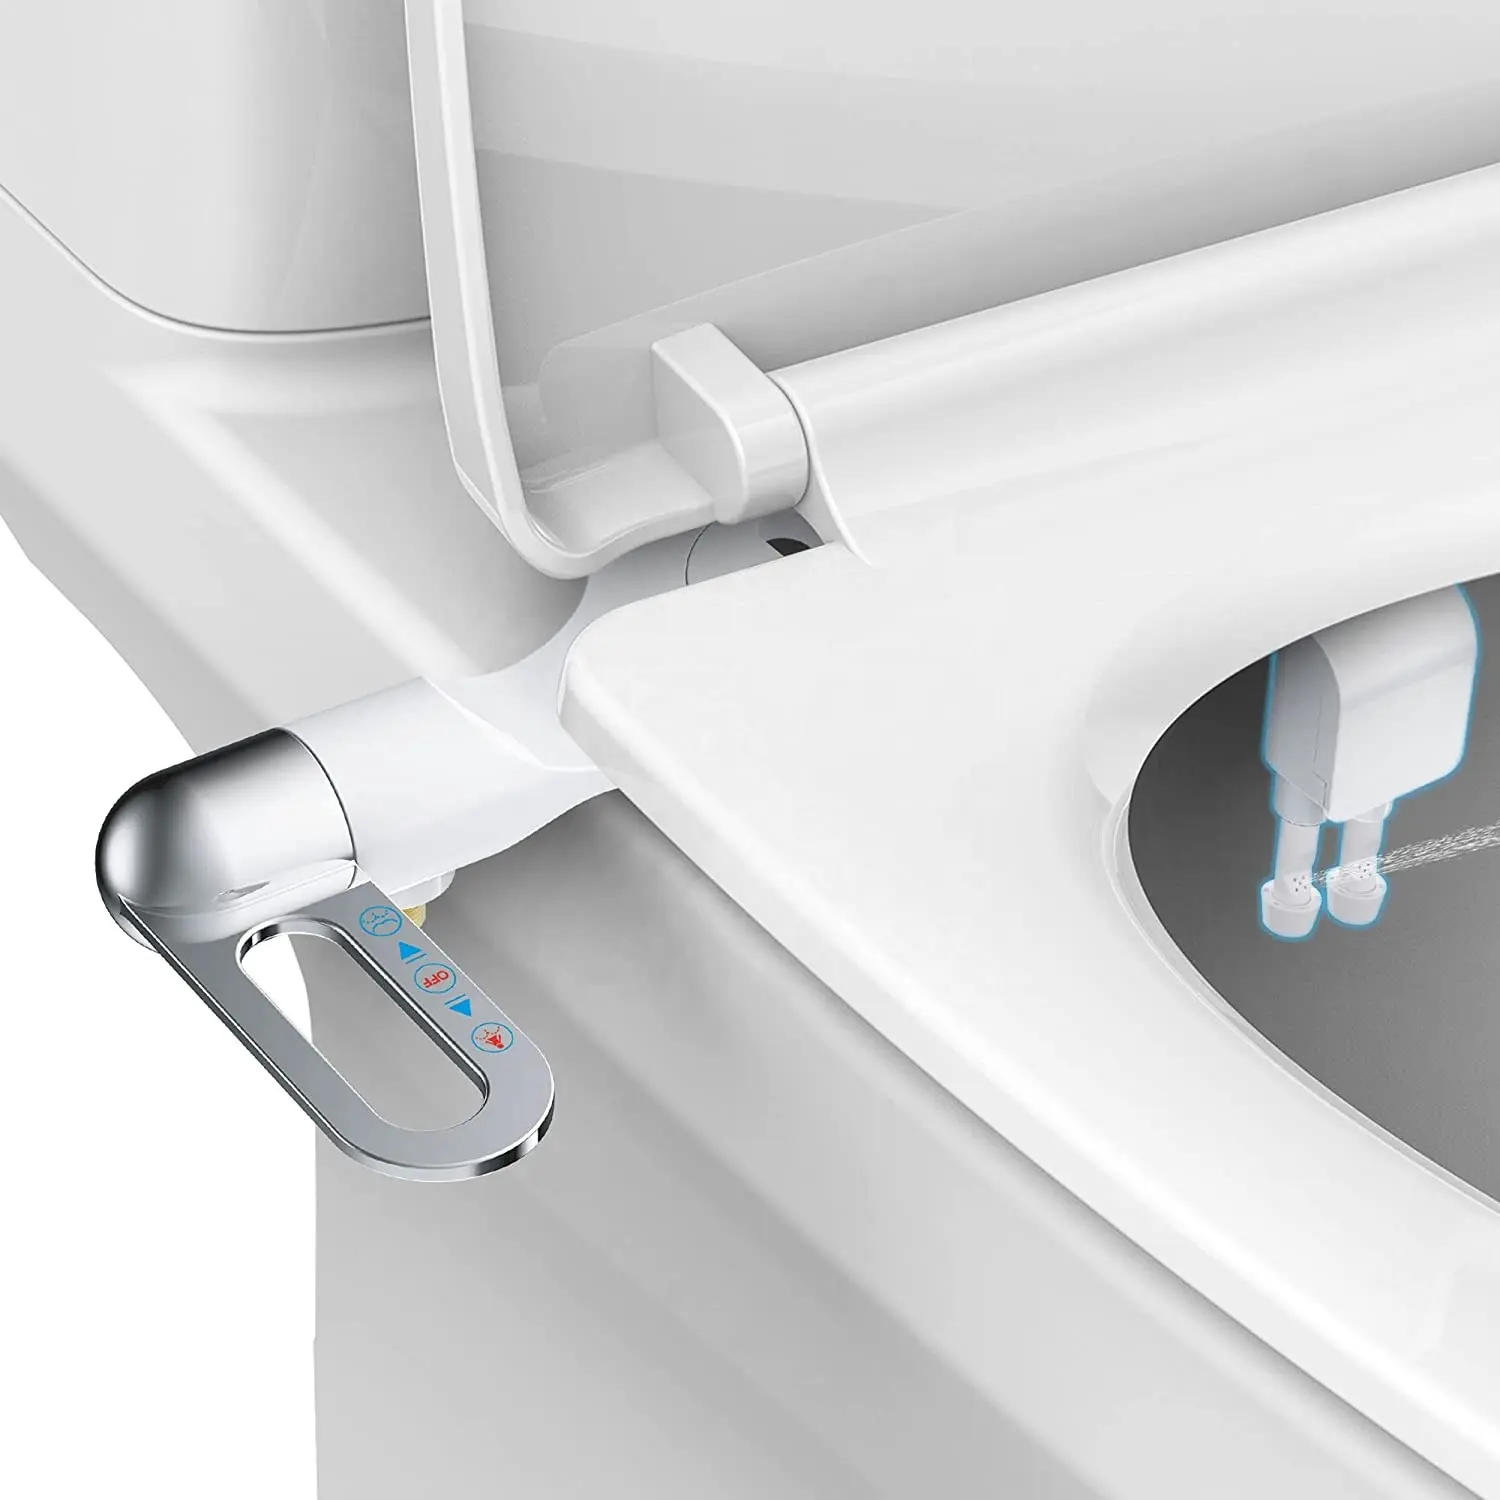 OEM/ODM Phito bide süper ince ve ince çift yıkama nozulları tuvalet bide eki ucuz olmayan elektrikli mekanik WC bide tuvalet